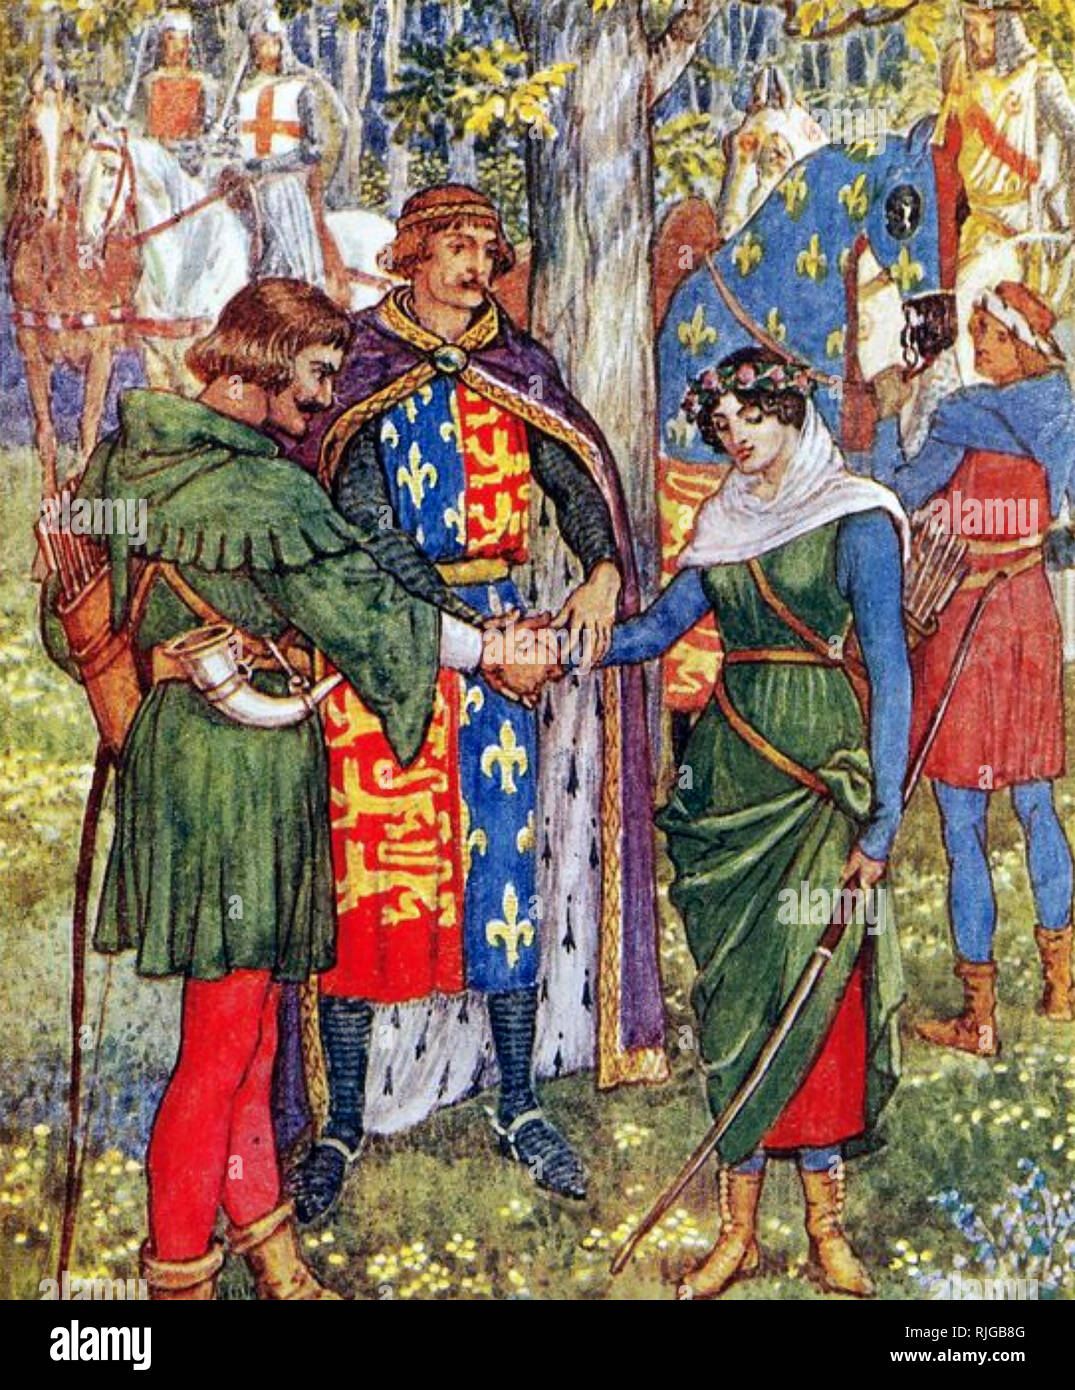 Die Ehe von ROBIN HOOD und Maid Marian von Henry Gilbert's Buch "Robin Hood und die Männer der Greenwood' von Walter Crane, 1912 illustriert. Stockfoto